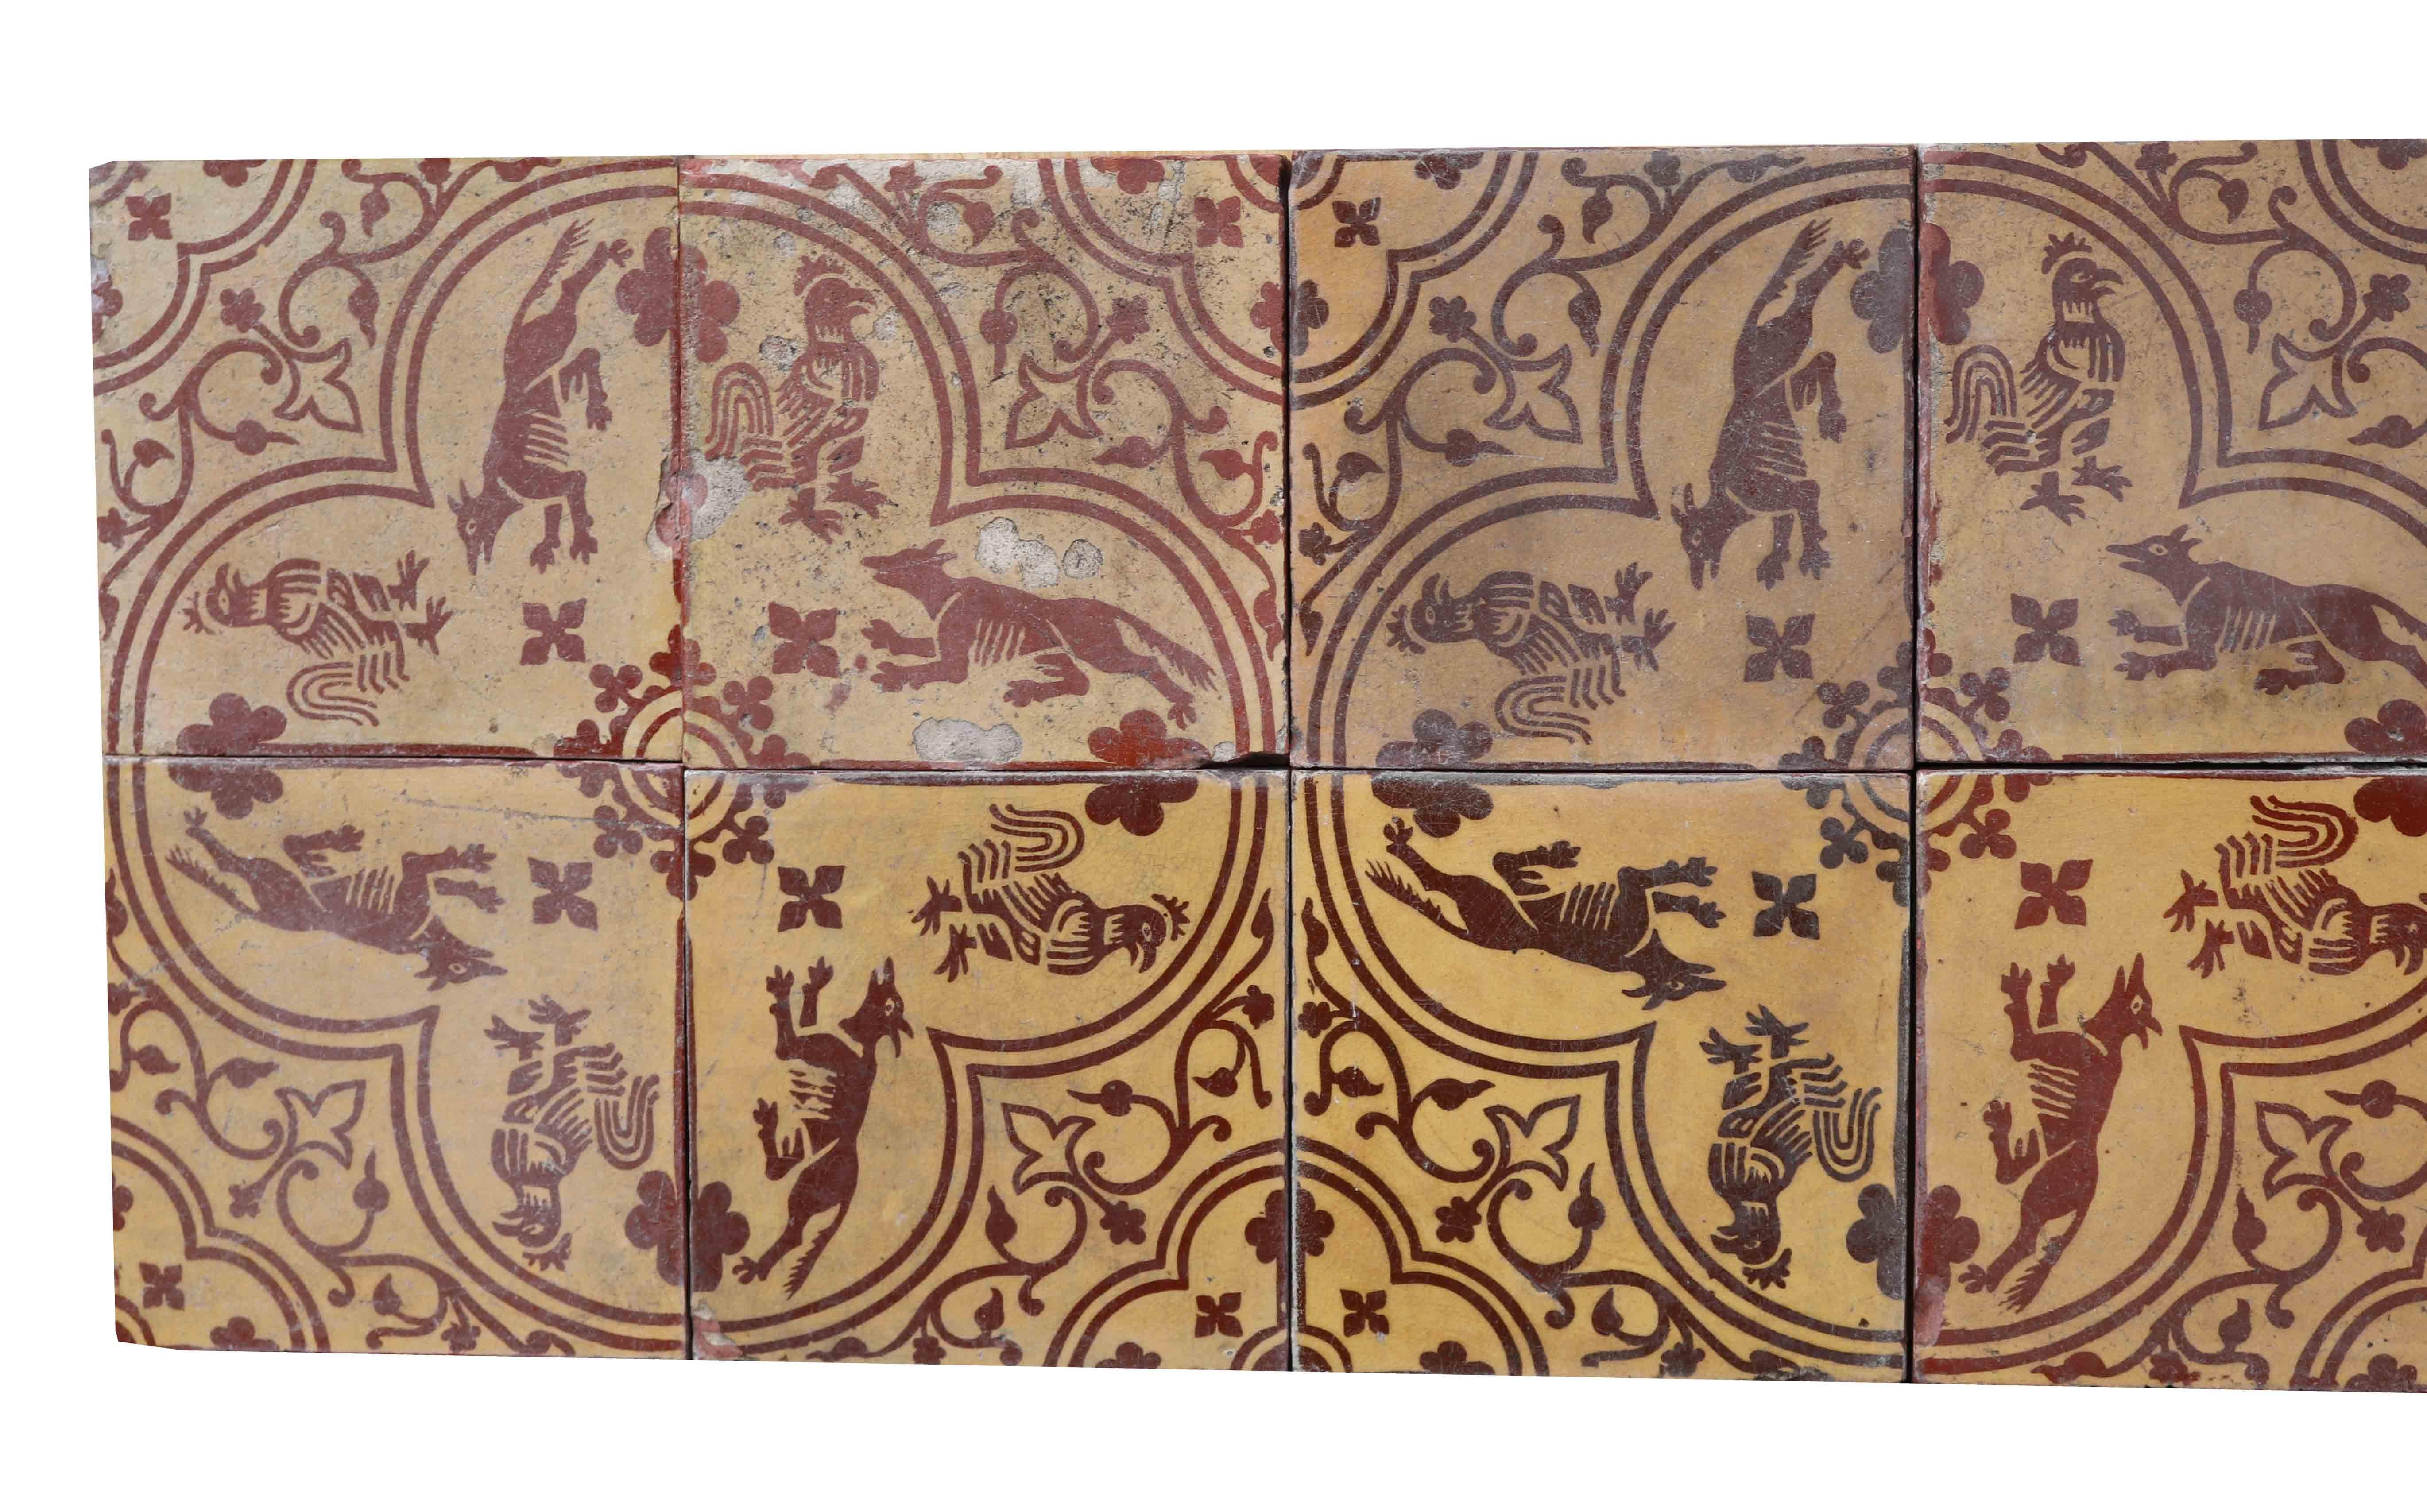 Zwölf Enkaustikkacheln (drei, vier Kacheltafeln) mit einem neo-mittelalterlichen Muster.

Vier Kacheln bilden einen Vierpass mit einem Fuchs und einer Henne in jeder Folie und mit Viertel-Vierpässen an den äußeren Ecken.